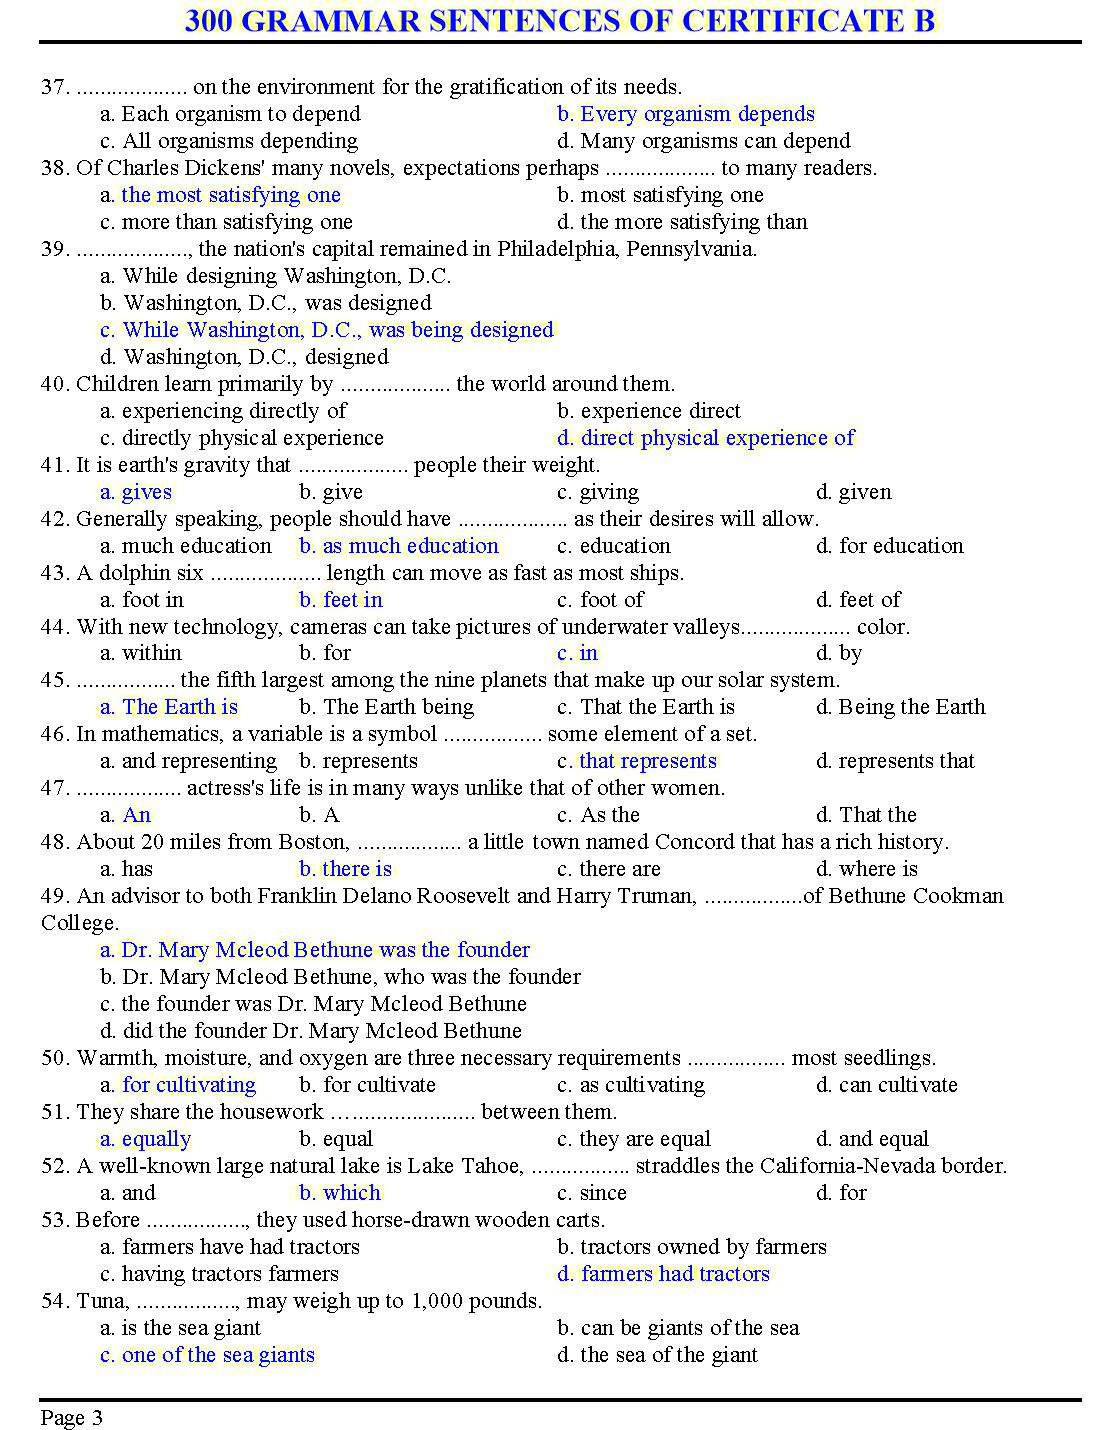 300 grammar sentences of certificate B trang 3